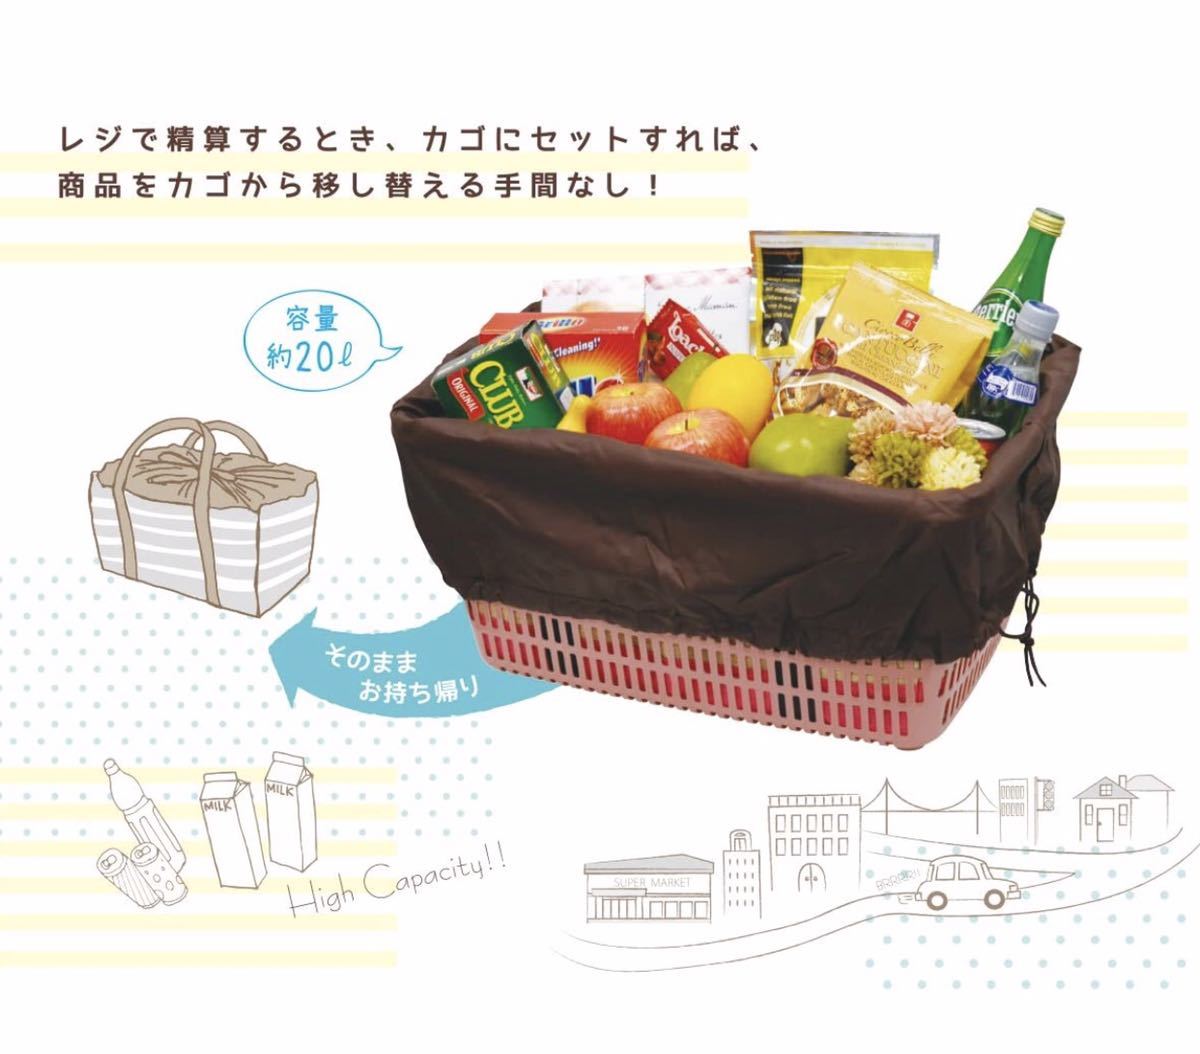  распродажа товара!reji корзина сумка термос теплоизоляция складной эко-сумка большая вместимость reji корзина задний желтый 